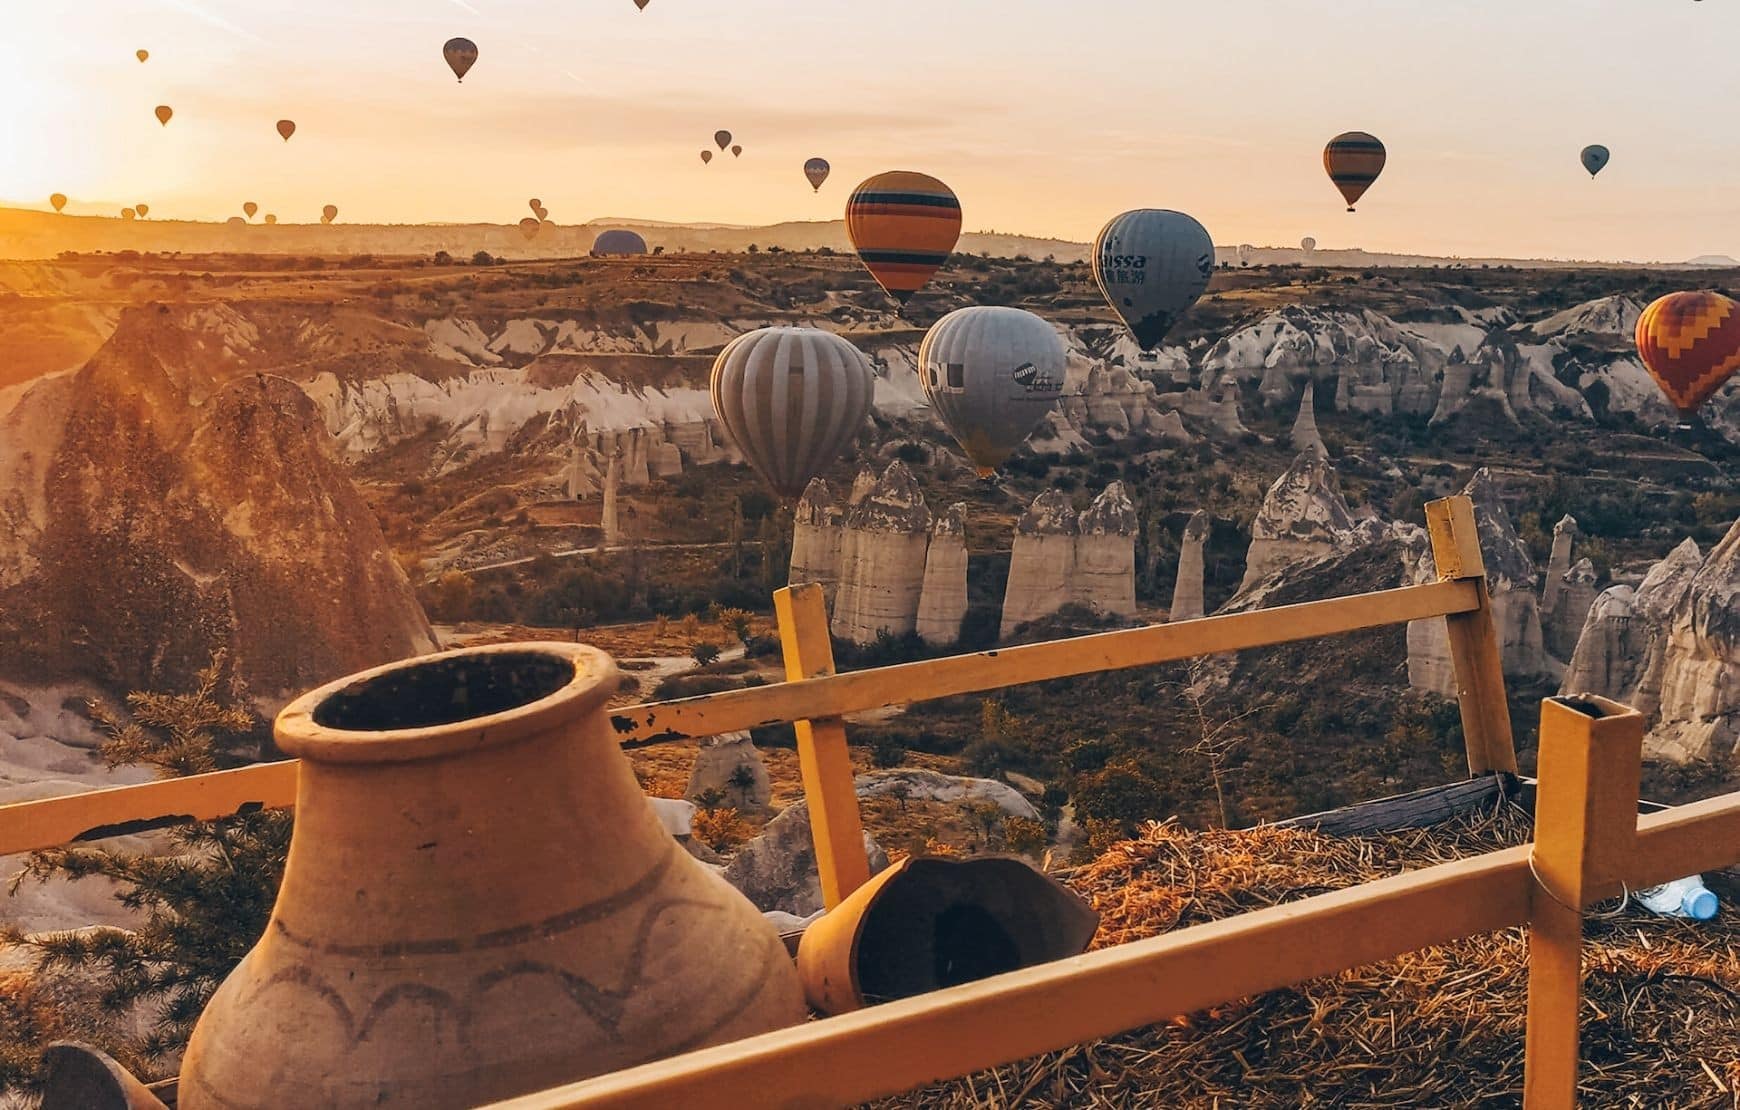 Morning view of balloon - Cappadocia